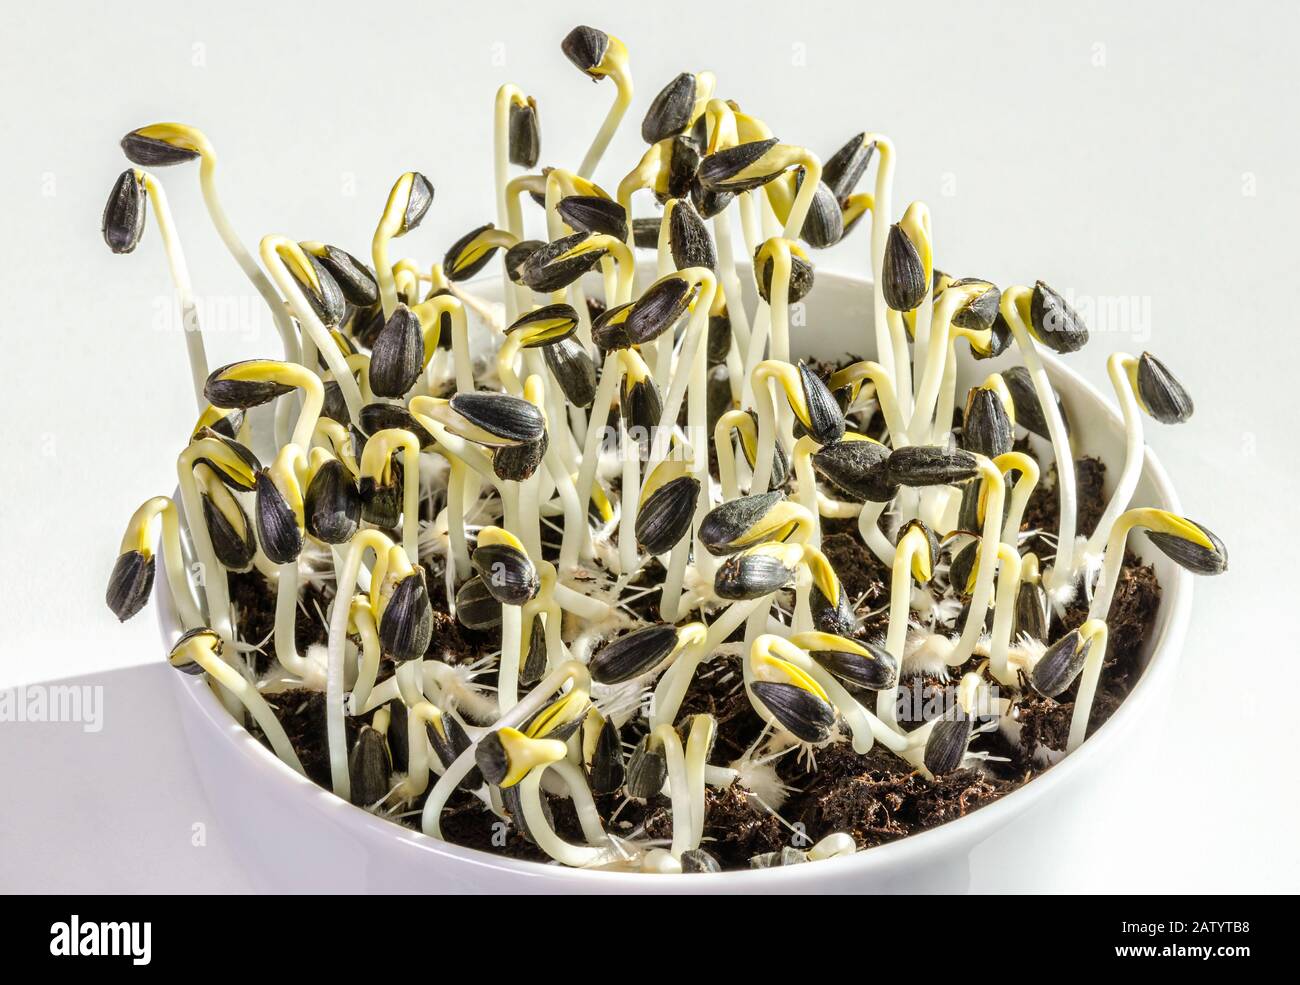 Sonnenblumen sprießen in einer weißen Schüssel. Sprosse und Mikrogrün von Helianthus annuus, der gemeinsamen Sonnenblume. Essbare Sämlinge und junge Pflanzen. Stockfoto